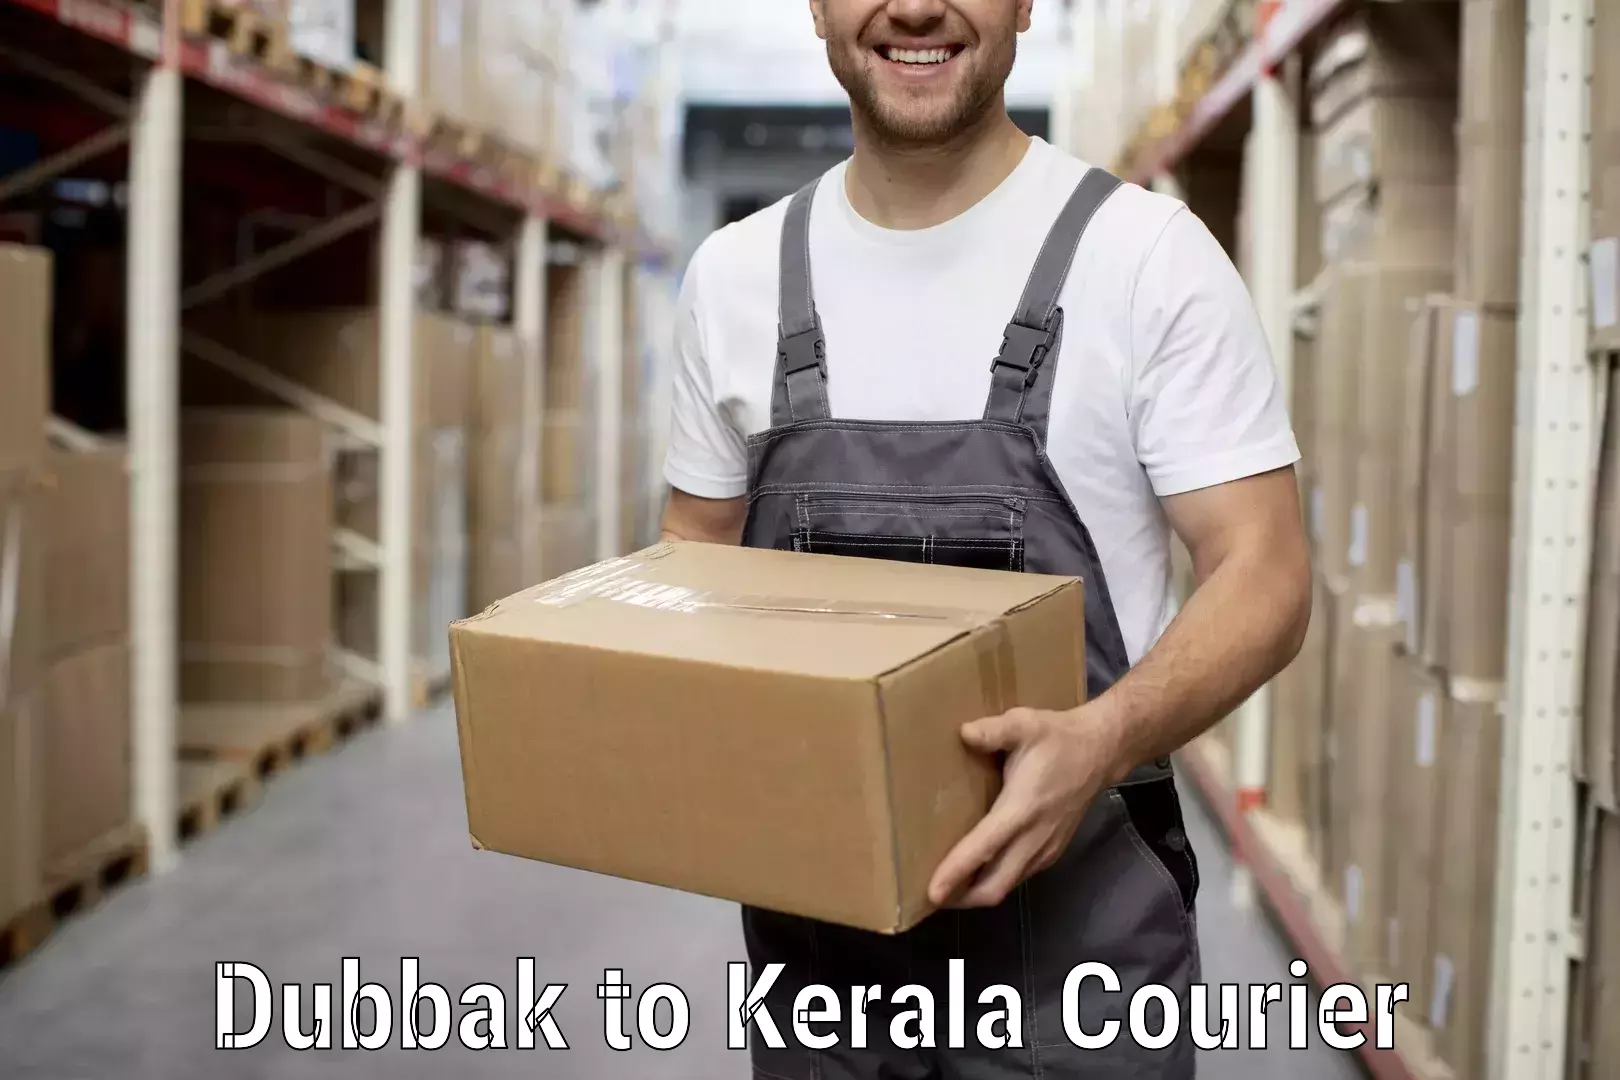 Professional relocation services Dubbak to Kakkur